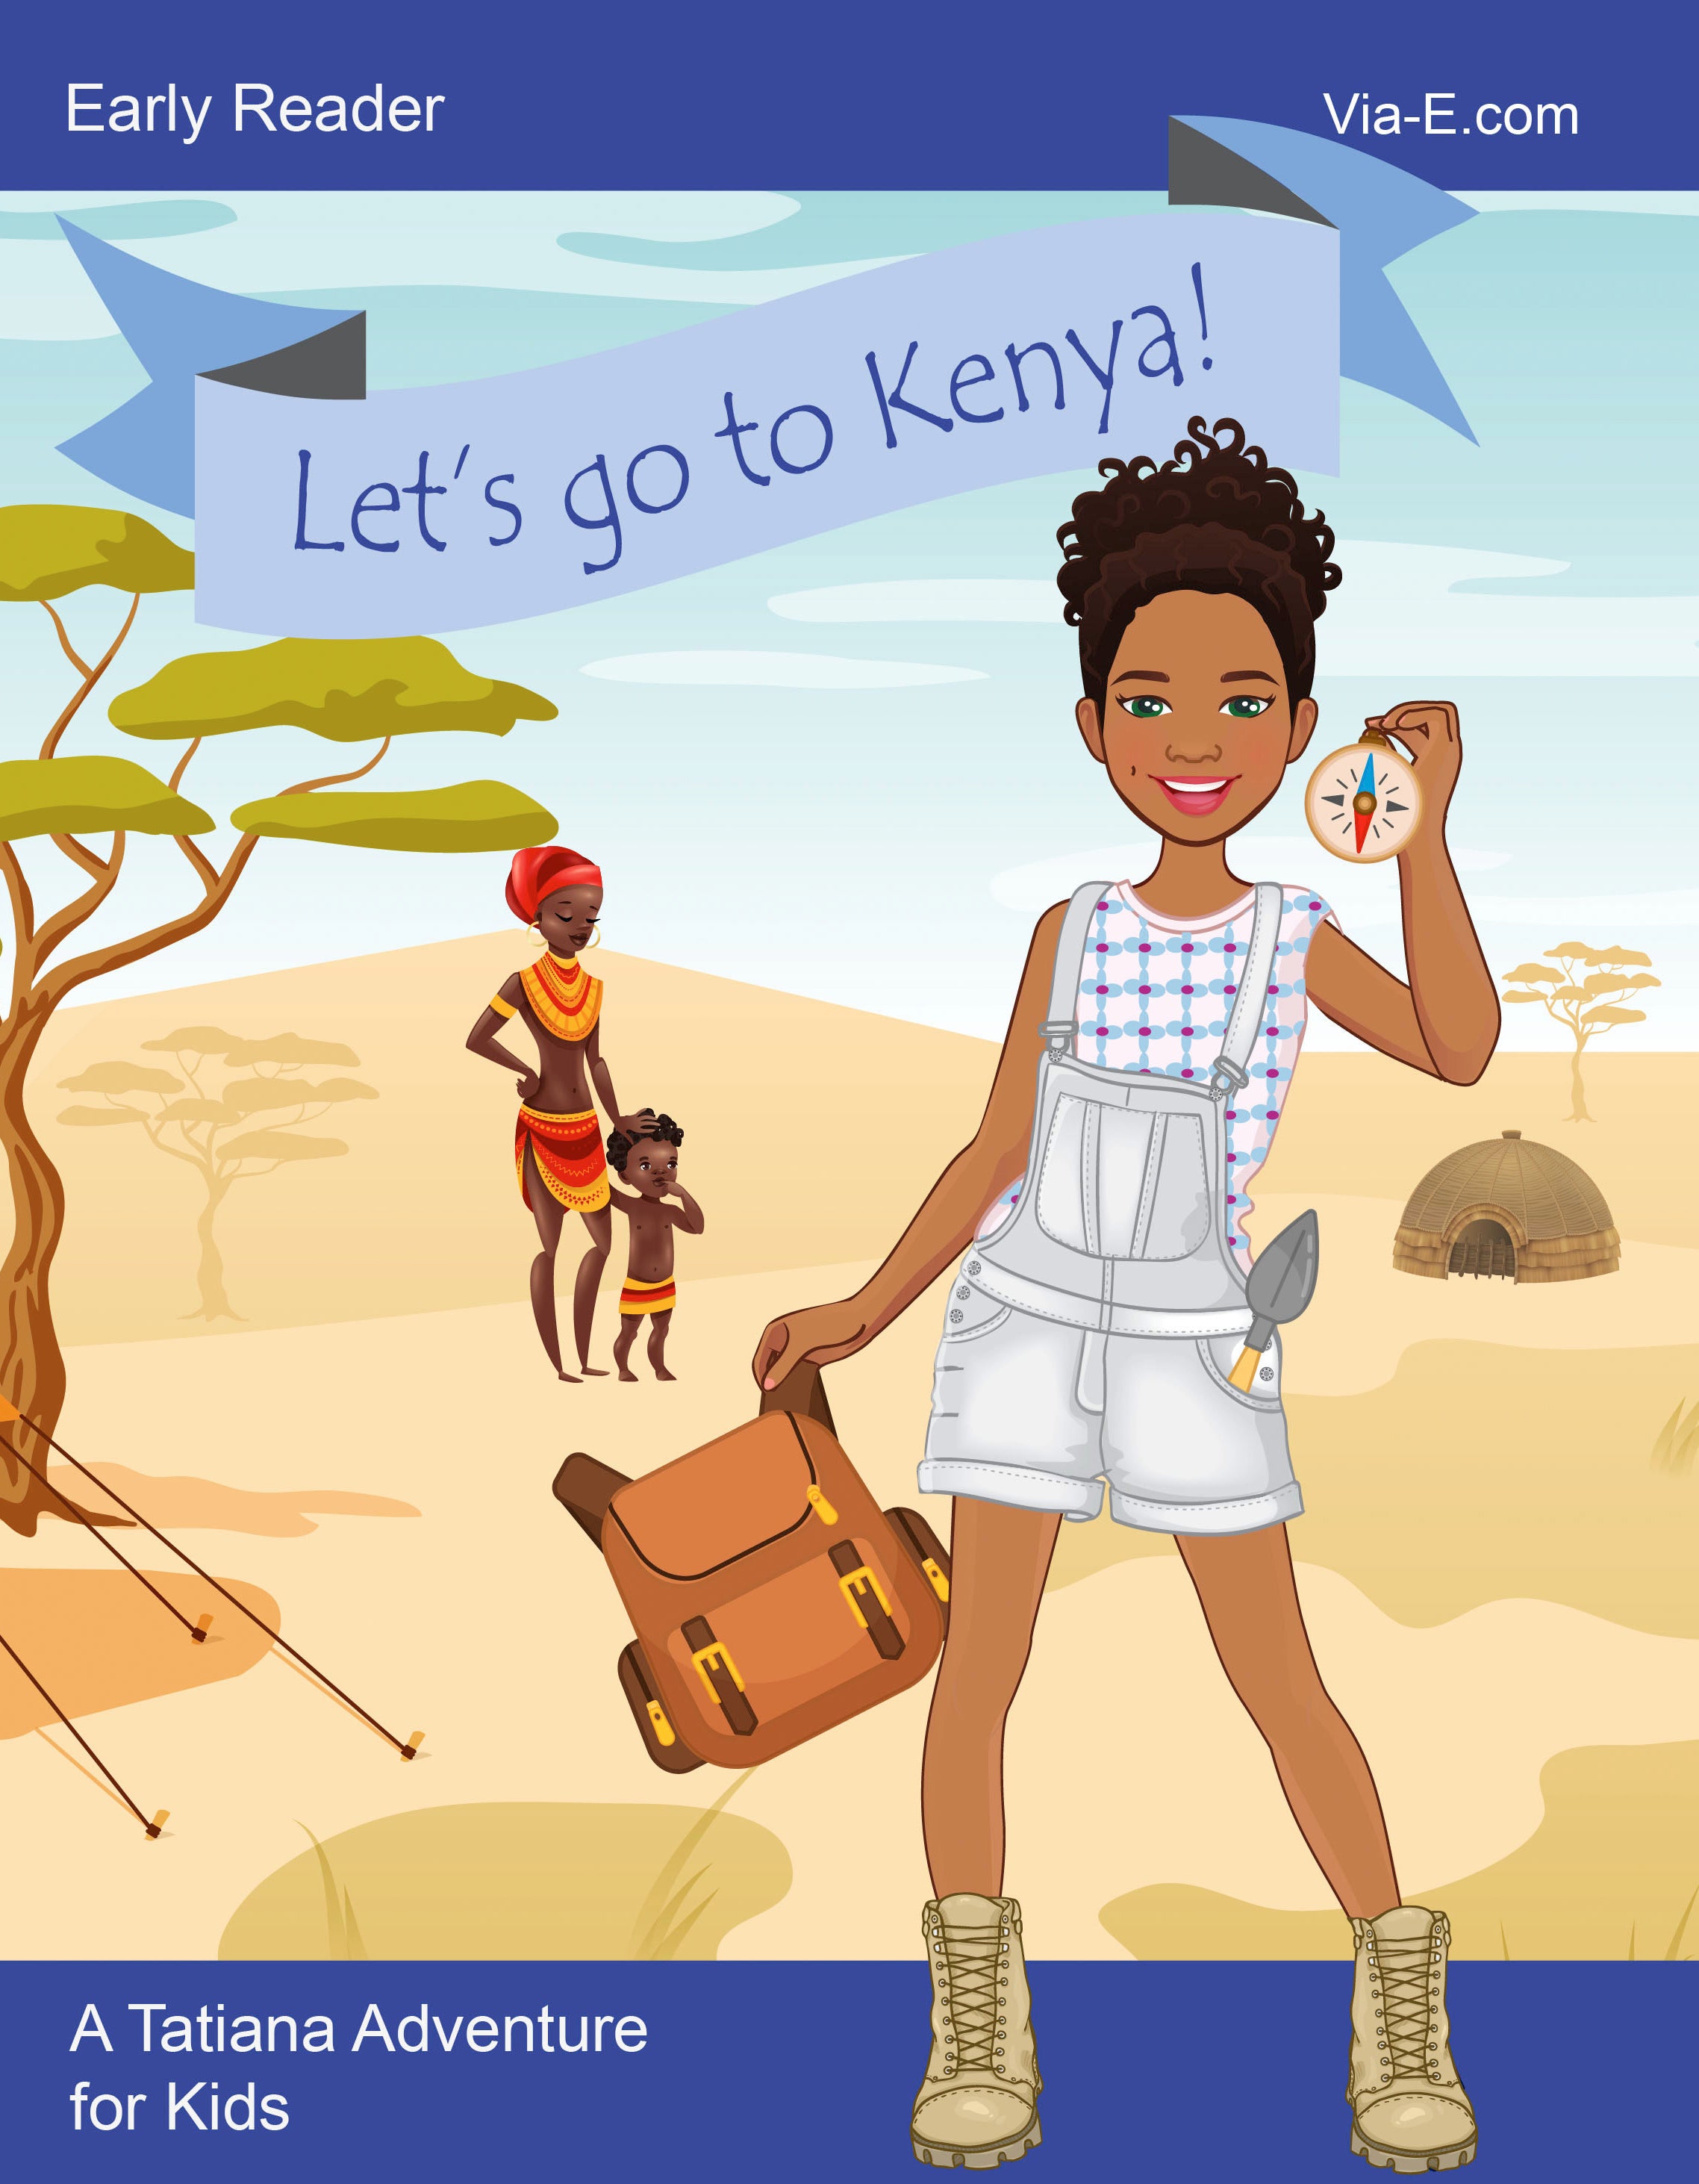 Let's go to Kenya!